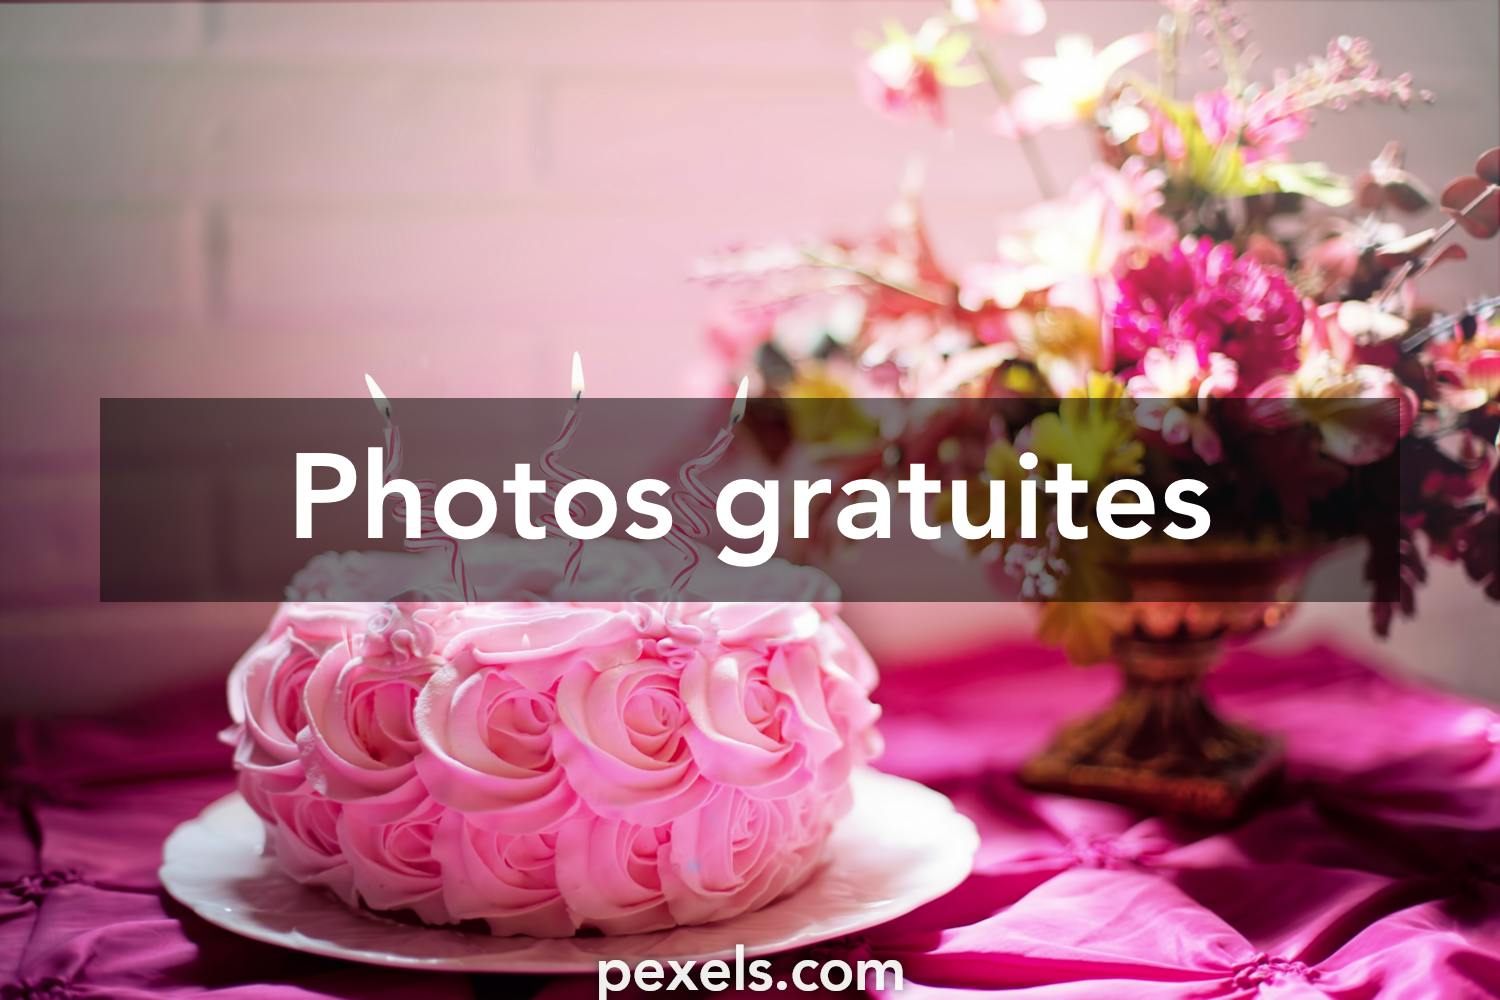 Les 10 000 Meilleures Photos Sur Le Theme Gateau D Anniversaire Telechargement Gratuit Photos Pexels